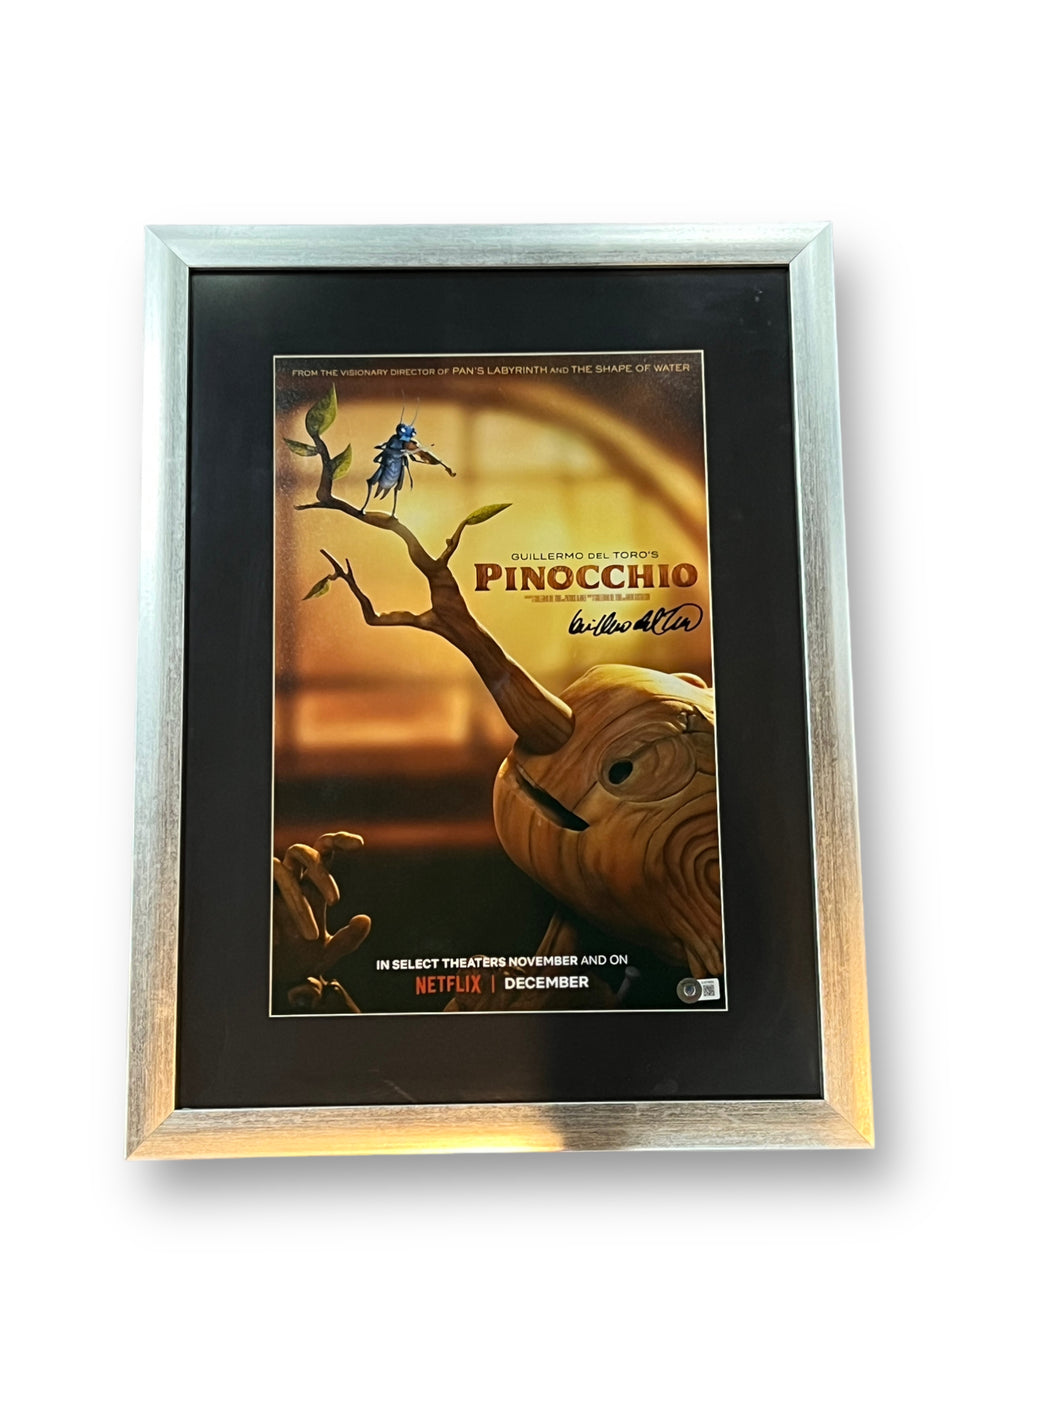 Poster Enmarcado / Cine / Guillermo del Toro (Pinocho)